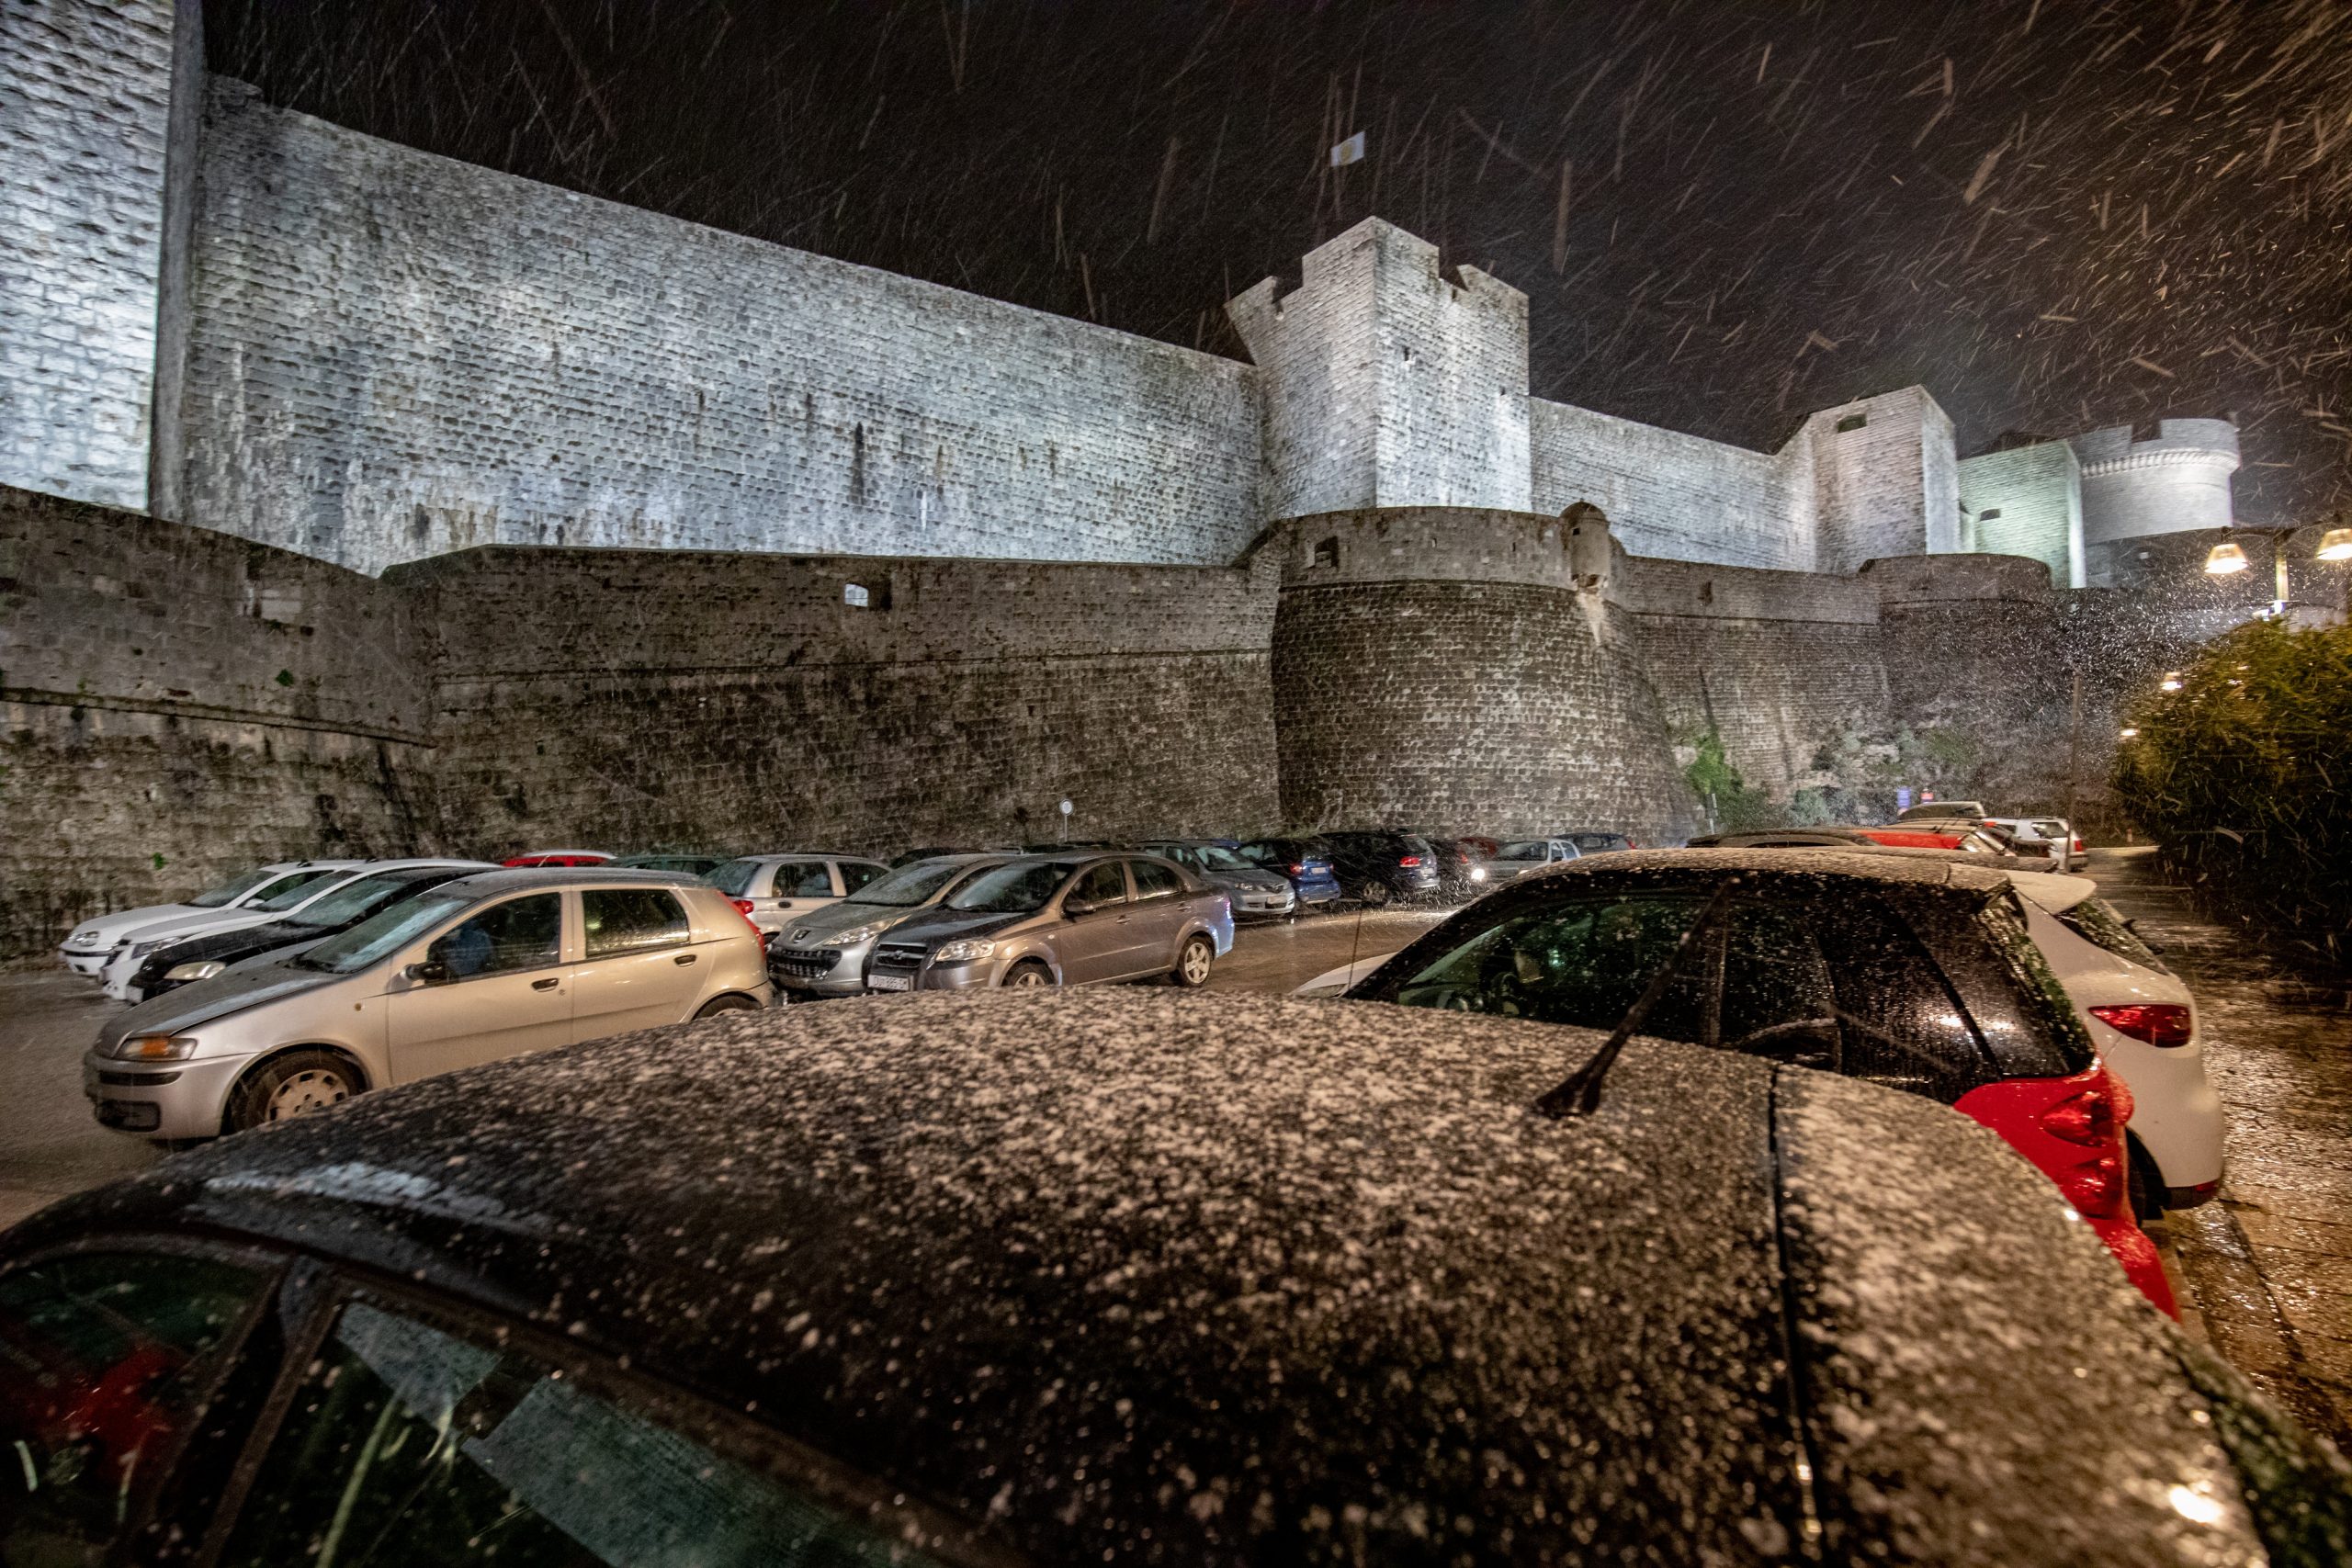 17.01.2021., Stara gradska jezgra, Dubrovnik - Prve snijezne pahulje zavijorile gradom.
Photo: Grgo Jelavic/PIXSELL